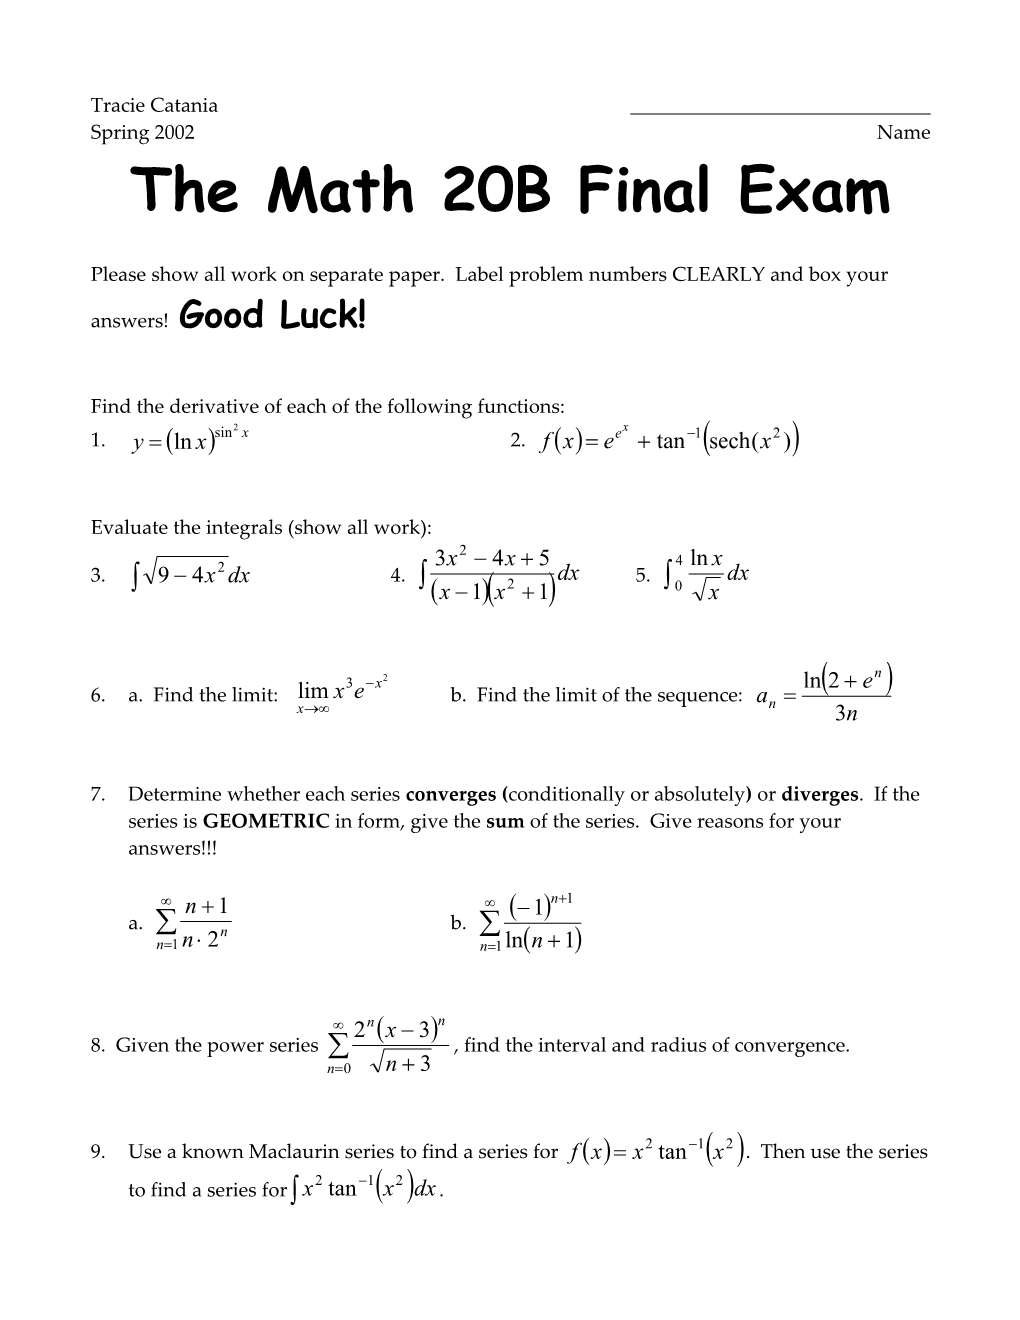 The Math 20B Final Exam